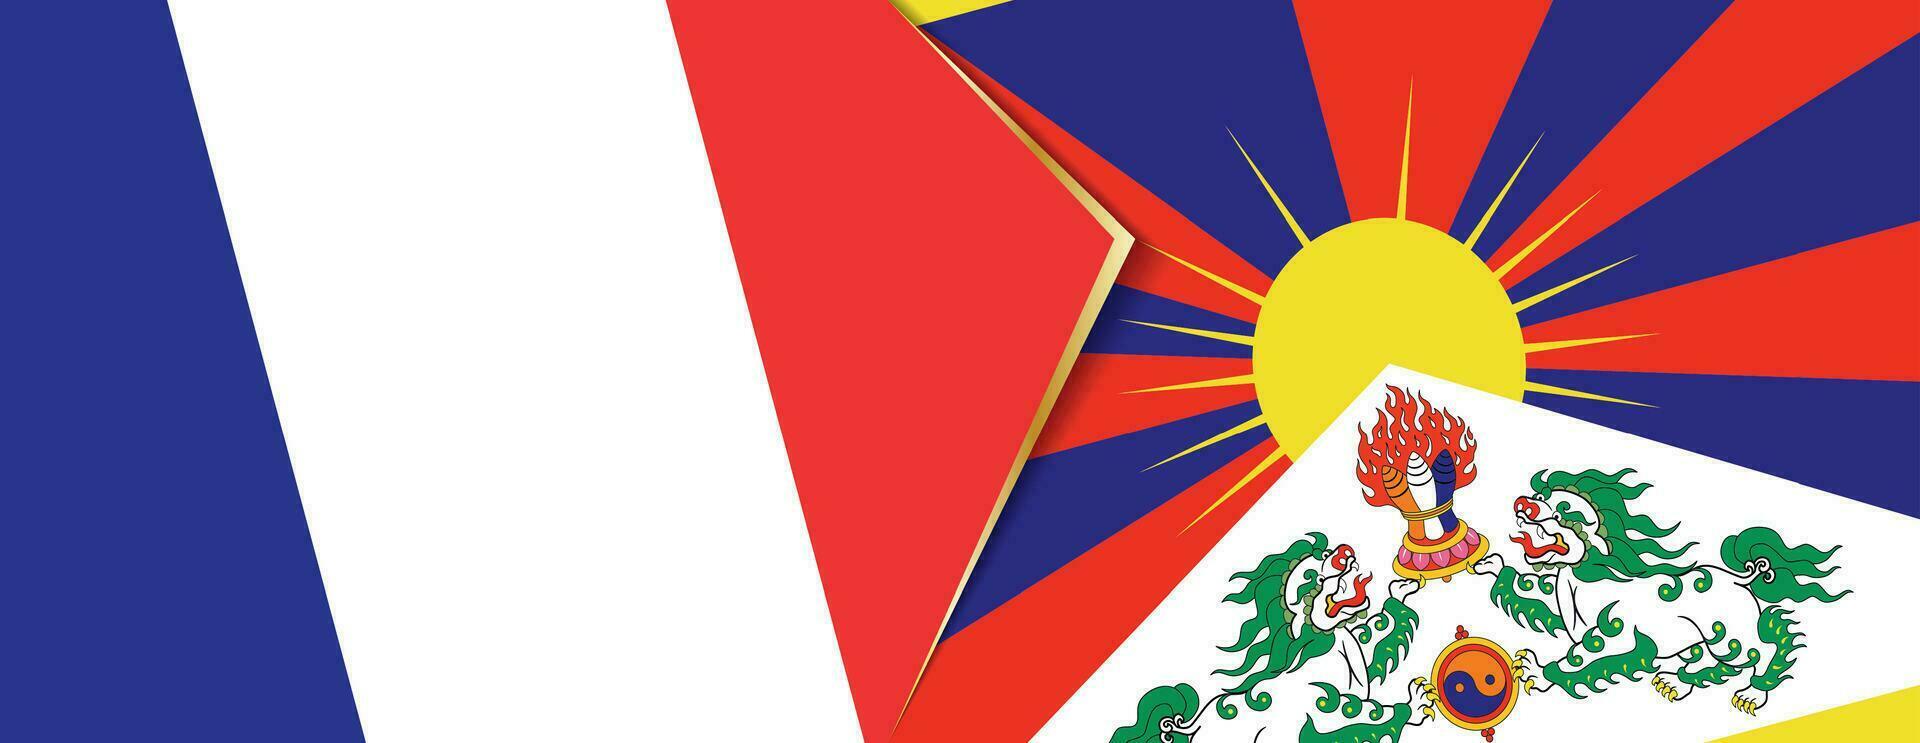 Frankreich und Tibet Flaggen, zwei Vektor Flaggen.